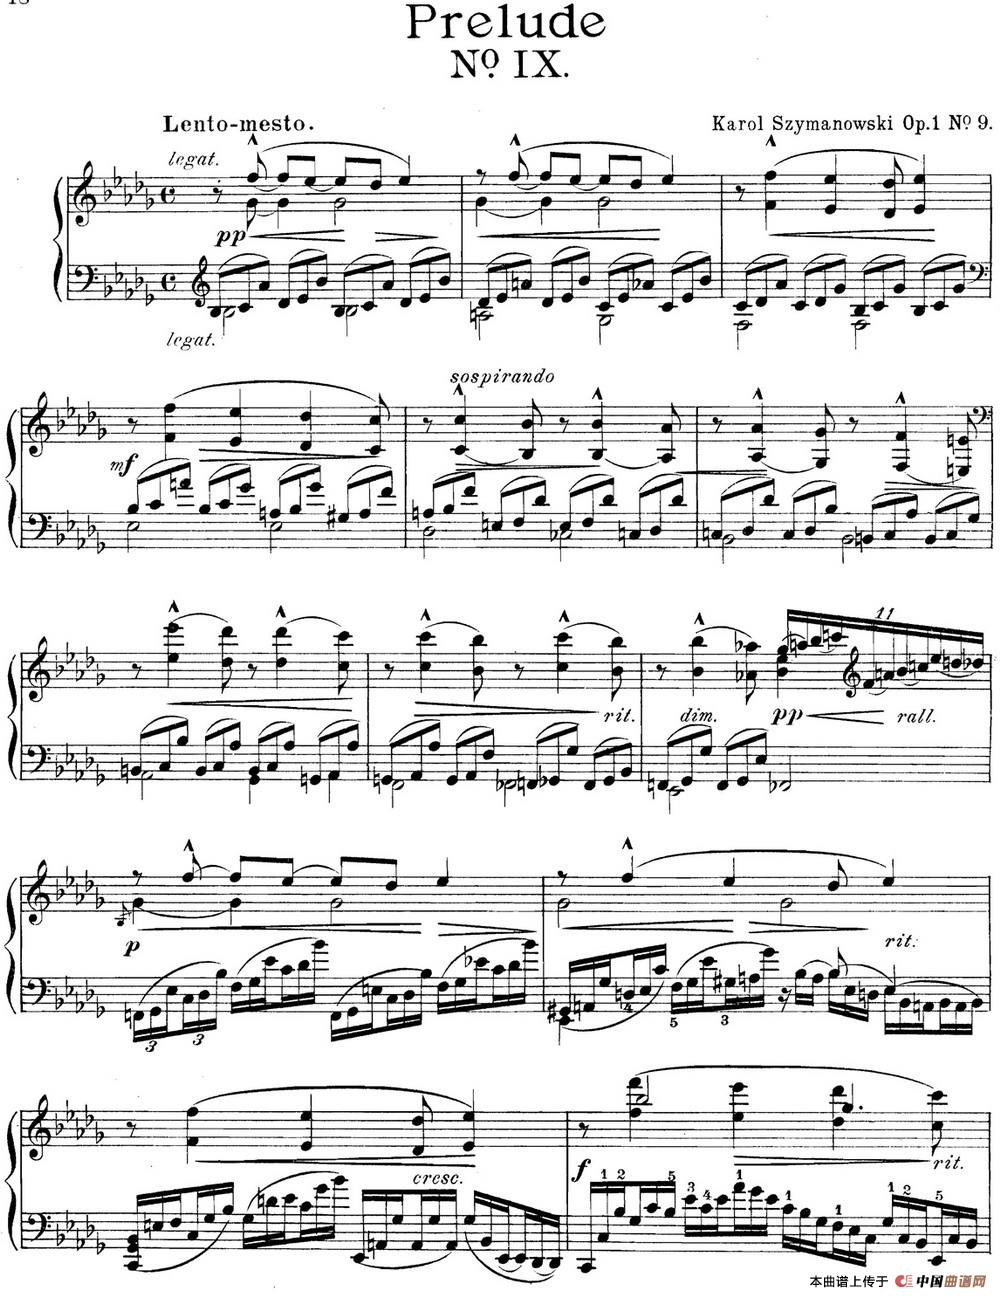 《希曼诺夫斯基 9首钢琴前奏曲 Op.1 No.9》钢琴曲谱图分享